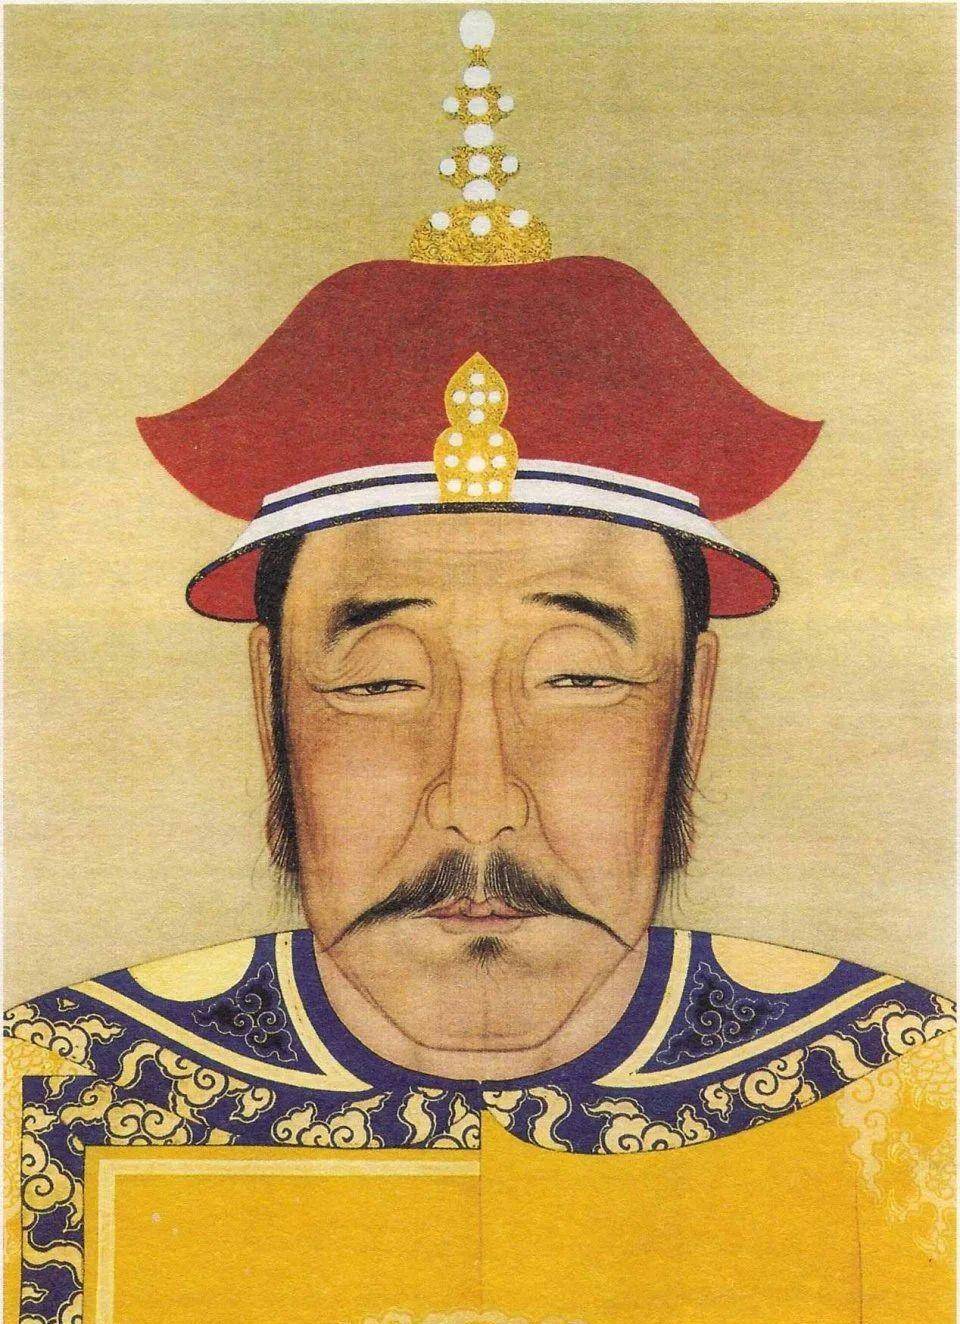 第十一子为爱新觉罗·巴布海,清初著名将领,最初受封台吉爵位,因屡立